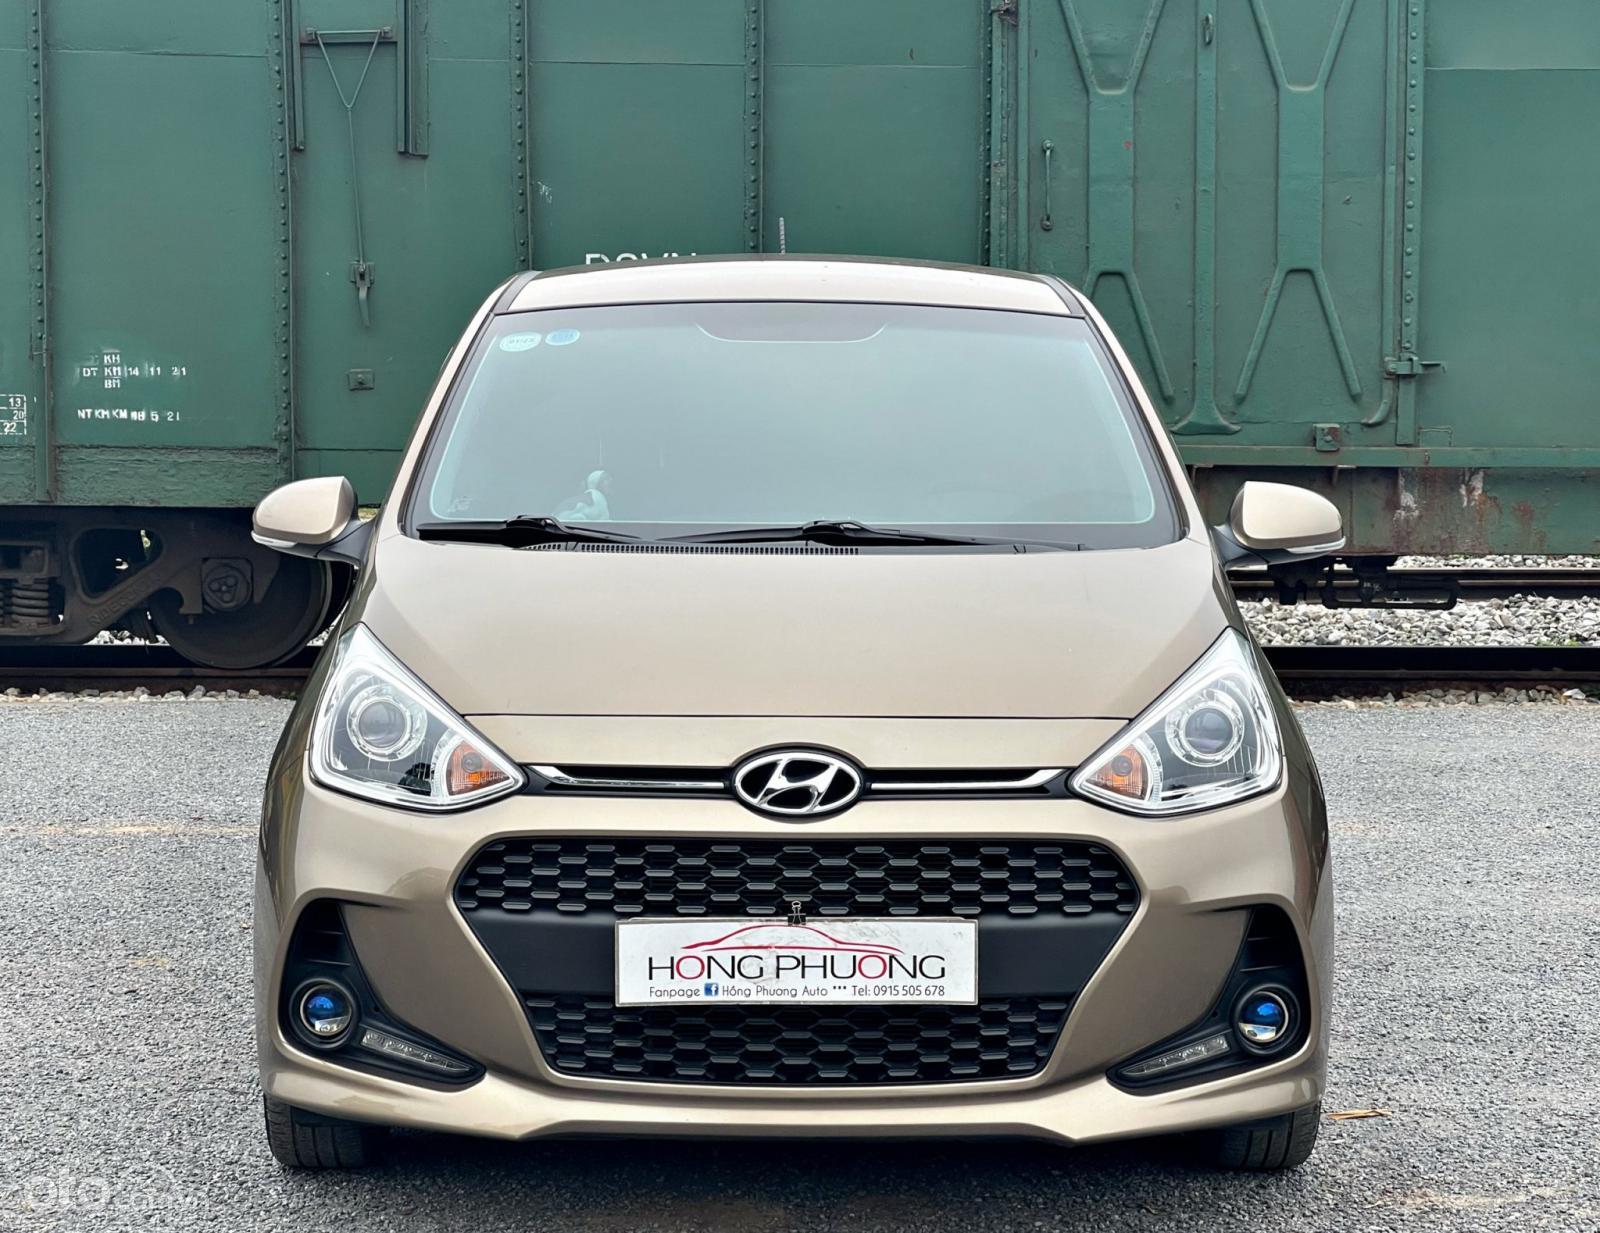 Bán Hyundai Grand i10 1.2 MT 2020, xe phiên bản 1.2 đủ đồ, chỉ 90 triệu nhận xe ngay